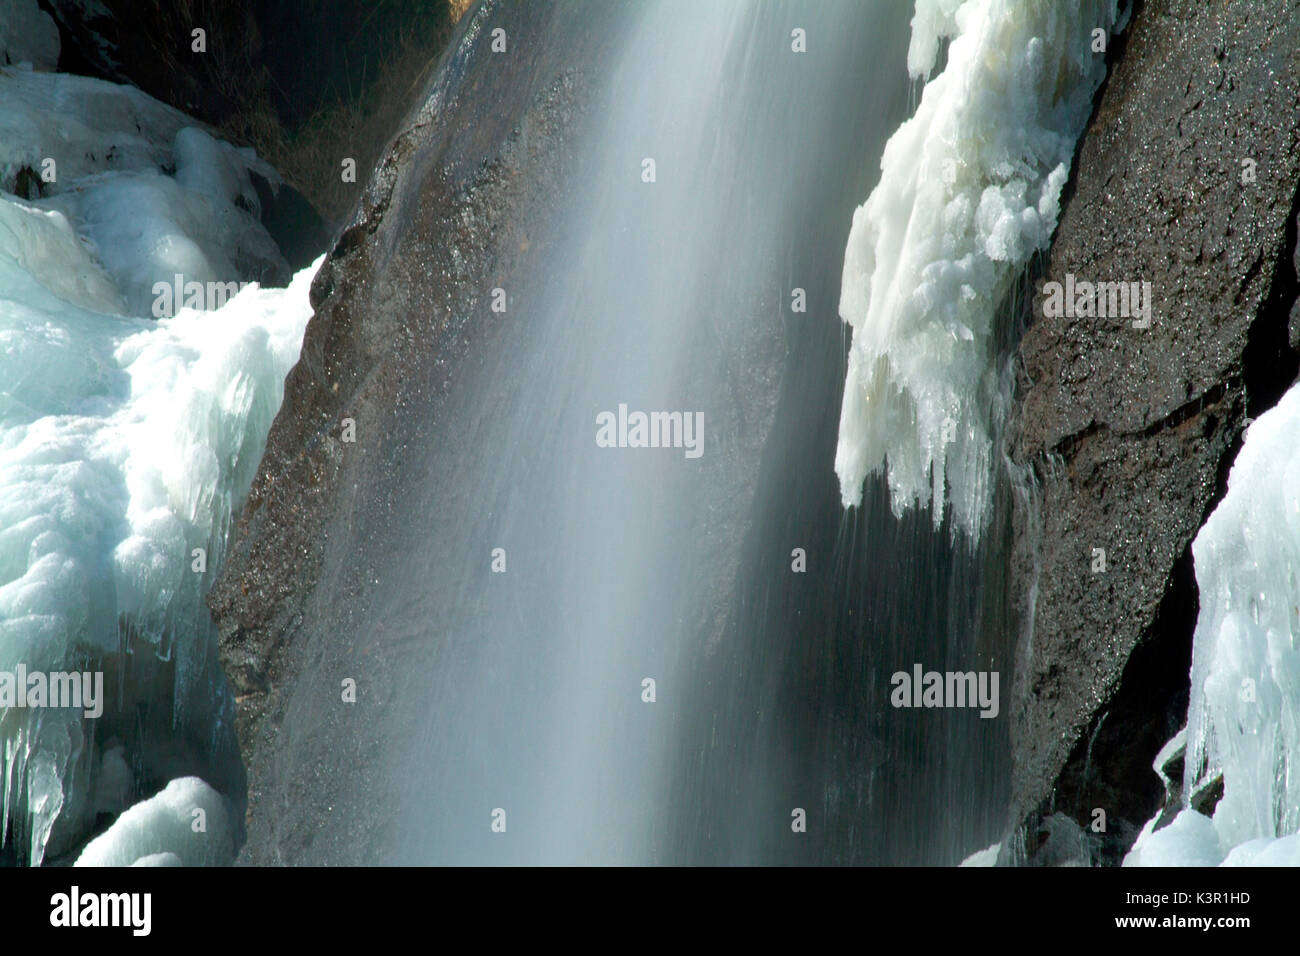 Eine dicke Eisschicht bildet sich im Winter auf den Seiten der Wasserfall von Acquafragia. Borgonuovo di Piuro. Valchiavenna. Valtellina. In der Lombardei. Italien. Europa. Stockfoto